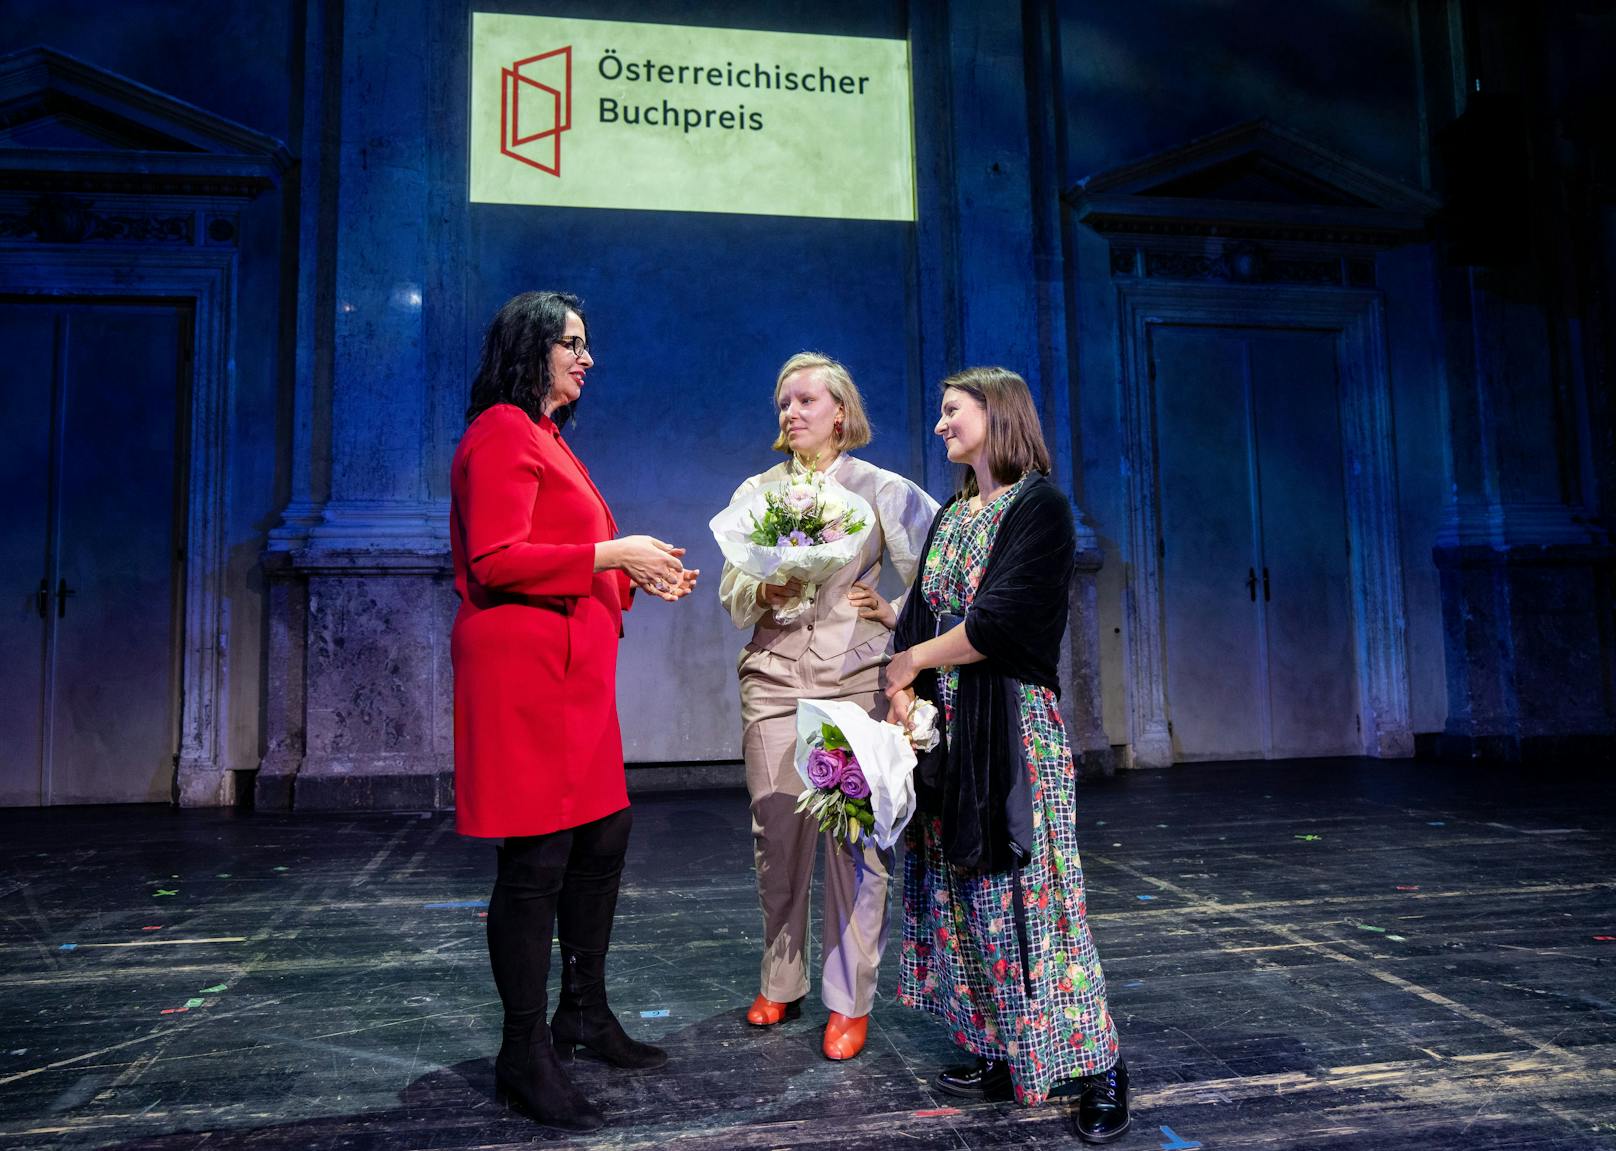 Kunst- und Kulturstaatssekretärin Andrea Mayer (Grüne) mit Raphaela Edelbauer und Anna Albinus im Rahmen der Verleihung des Österreichischen Buchpreises 2021 in Wien